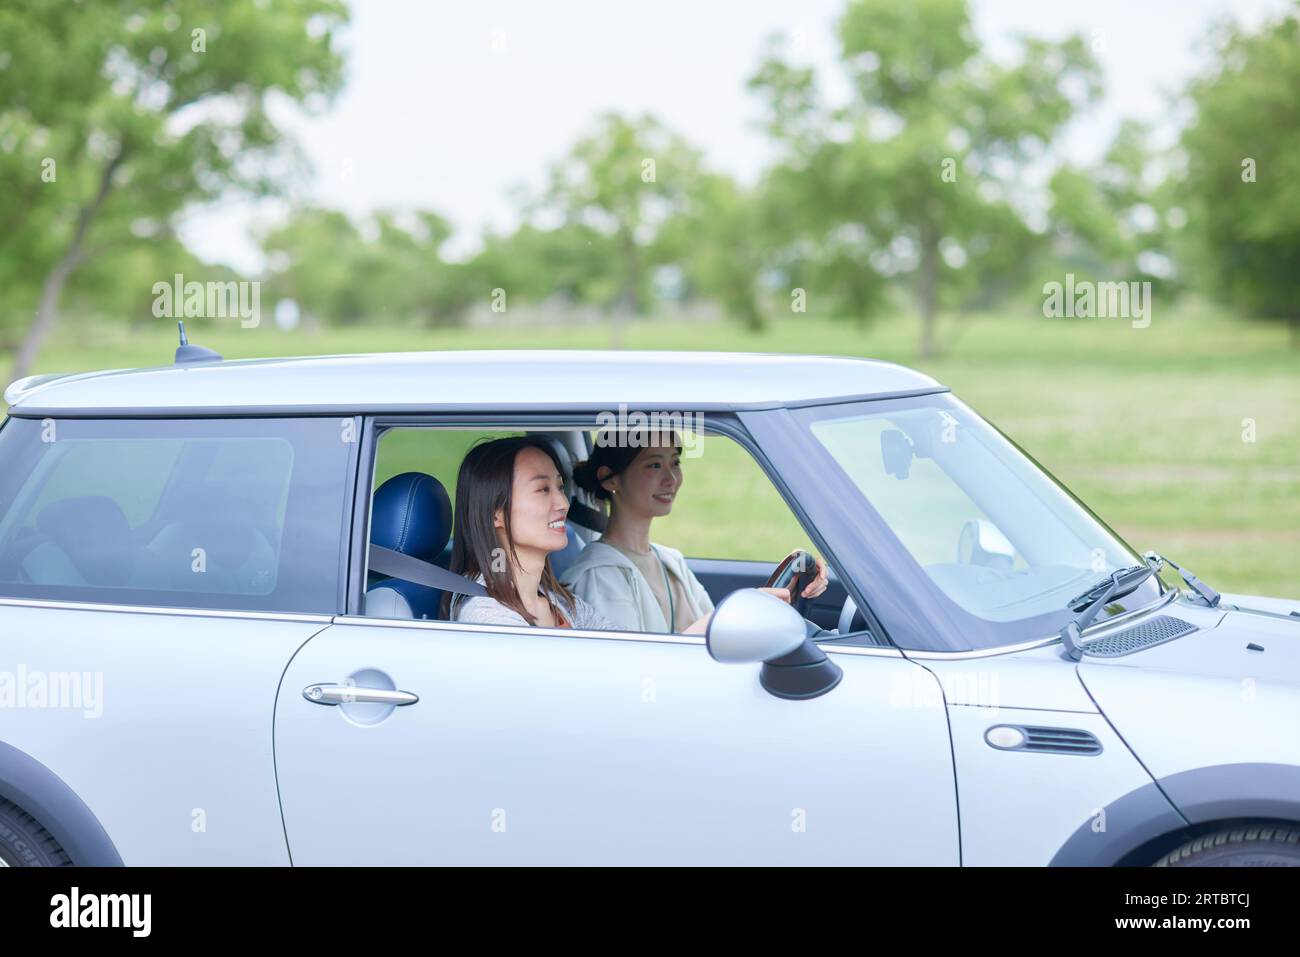 Mujeres japonesas conduciendo Foto de stock